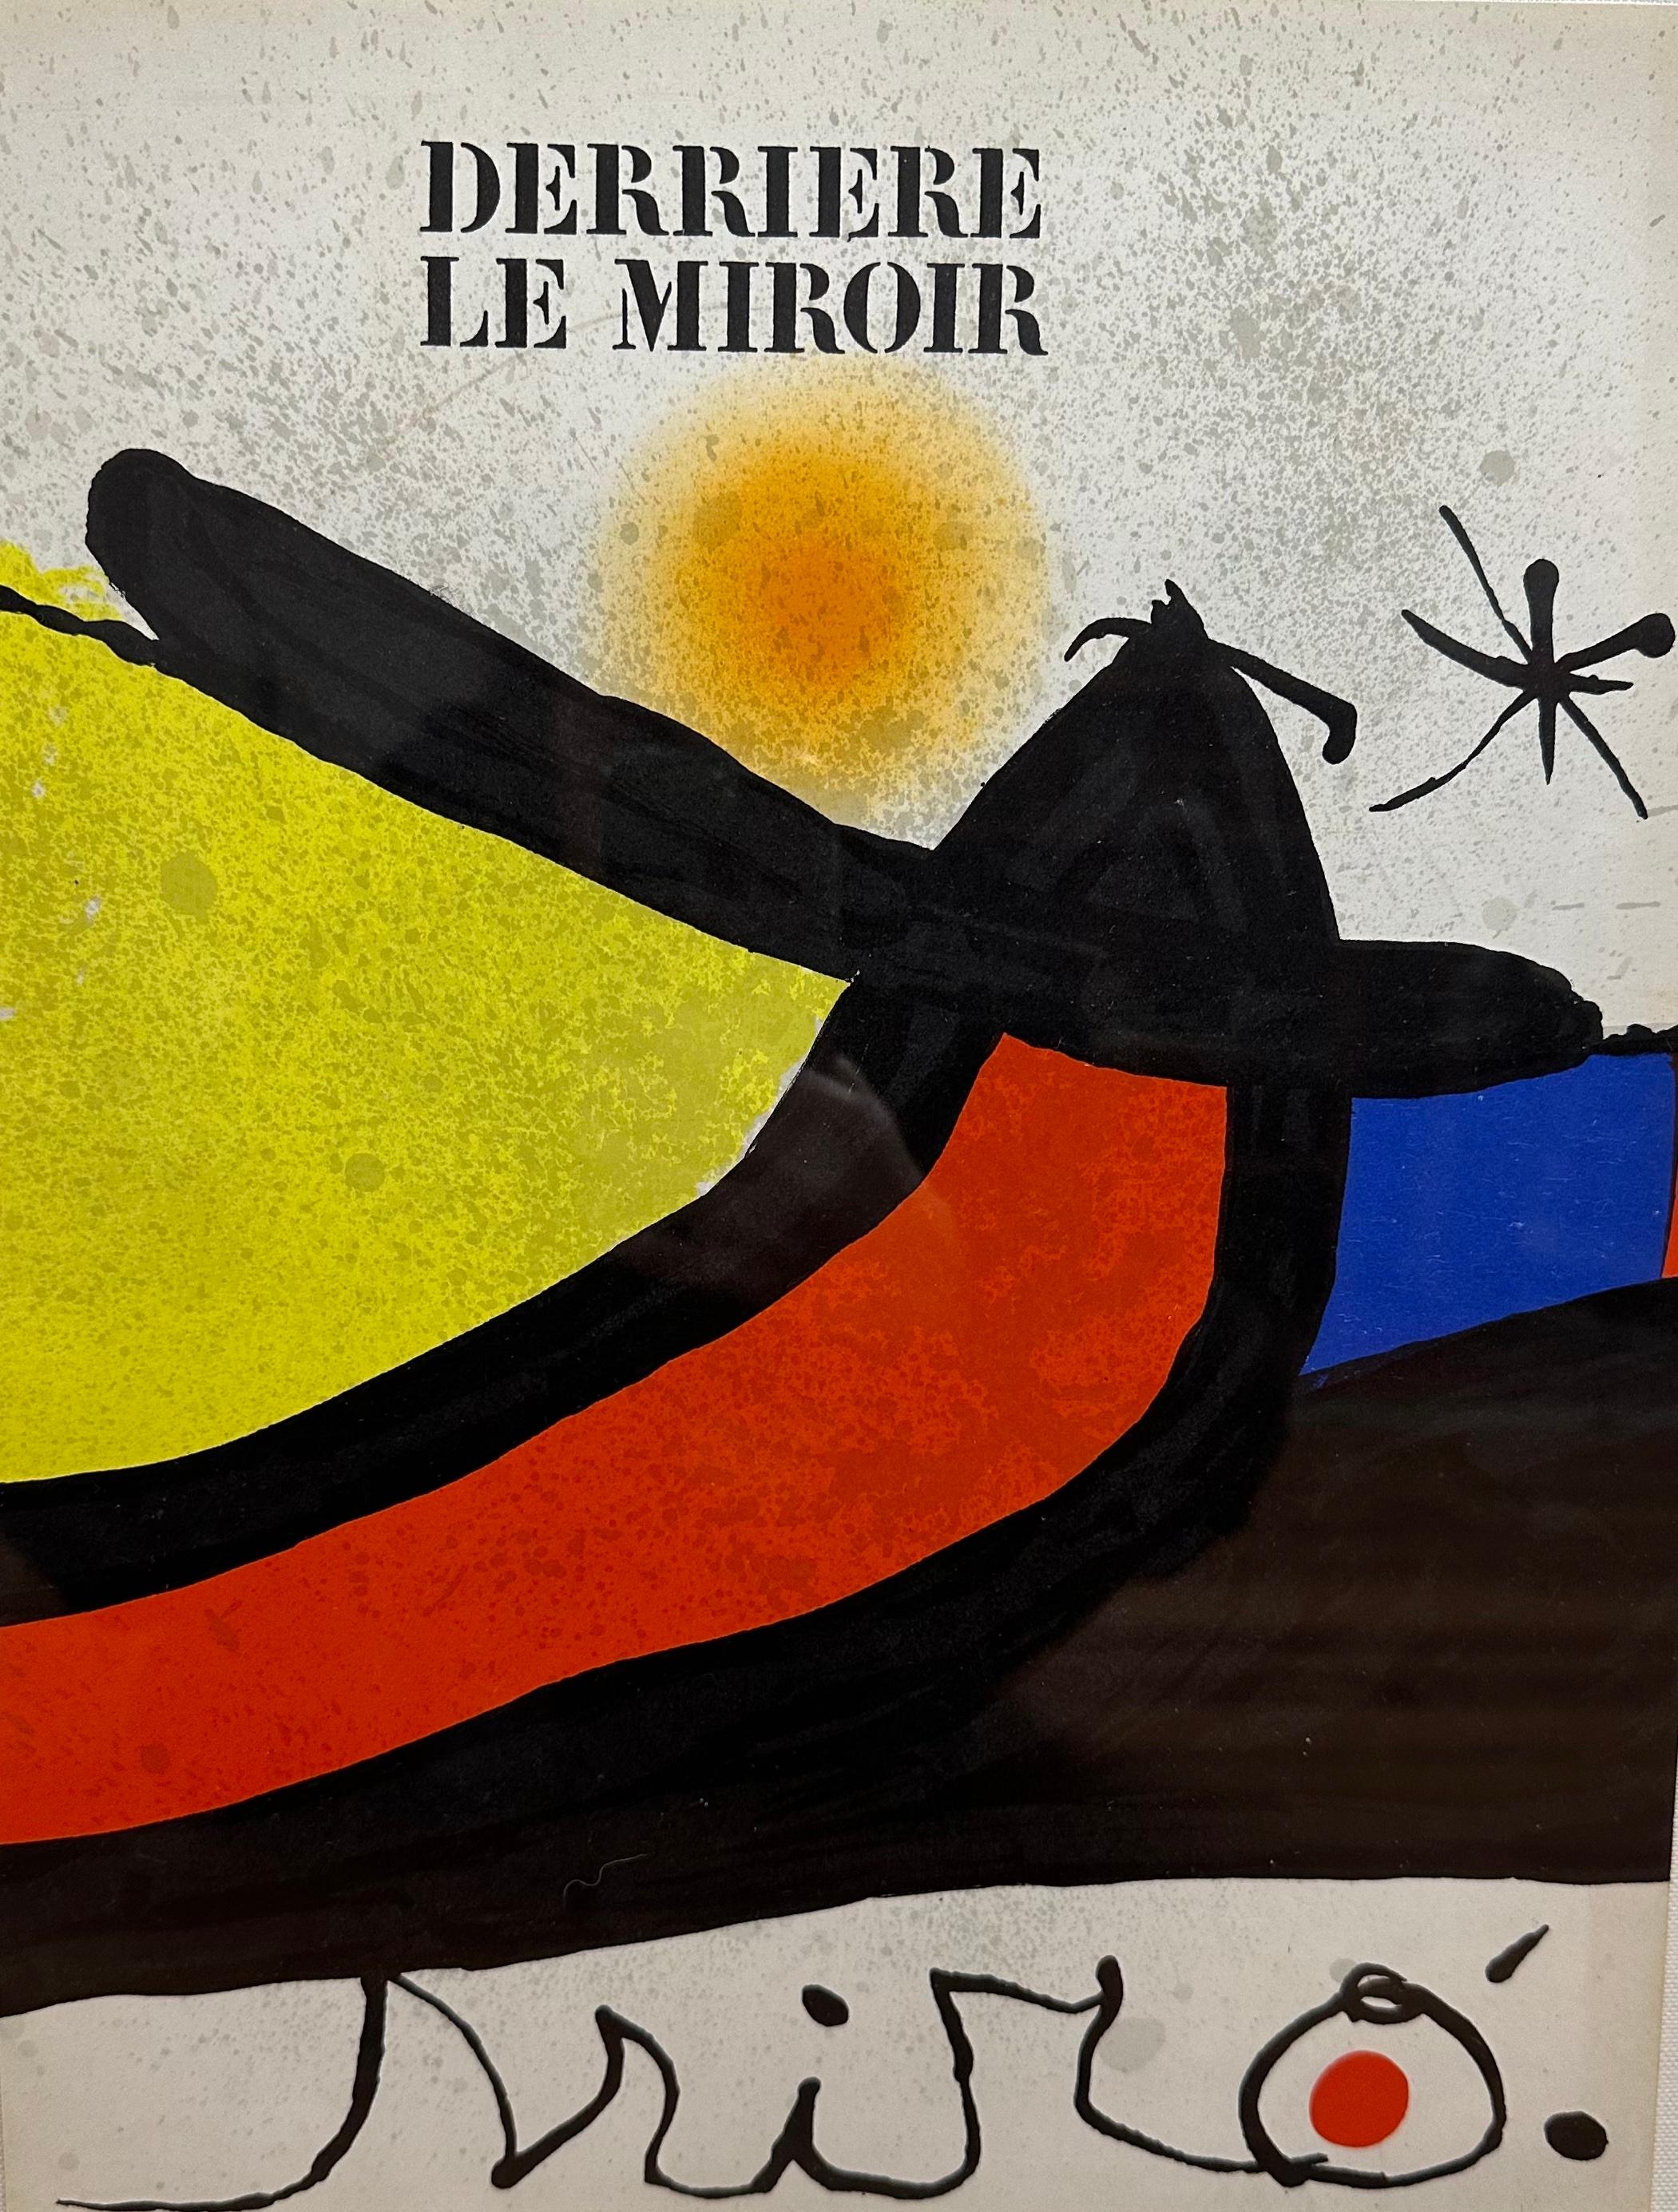 Joan Miró
Derriere le Miroir
Original Farblithographie
1971
Herausgegeben von Maeght Editeur, Paris
Verso mit Bleistift handsigniert und gewidmet
Individuell gerahmt nach Museumsstandards
Bildgröße: 14 x 11 Zoll
Rahmengröße: 26,5 x 24 Zoll